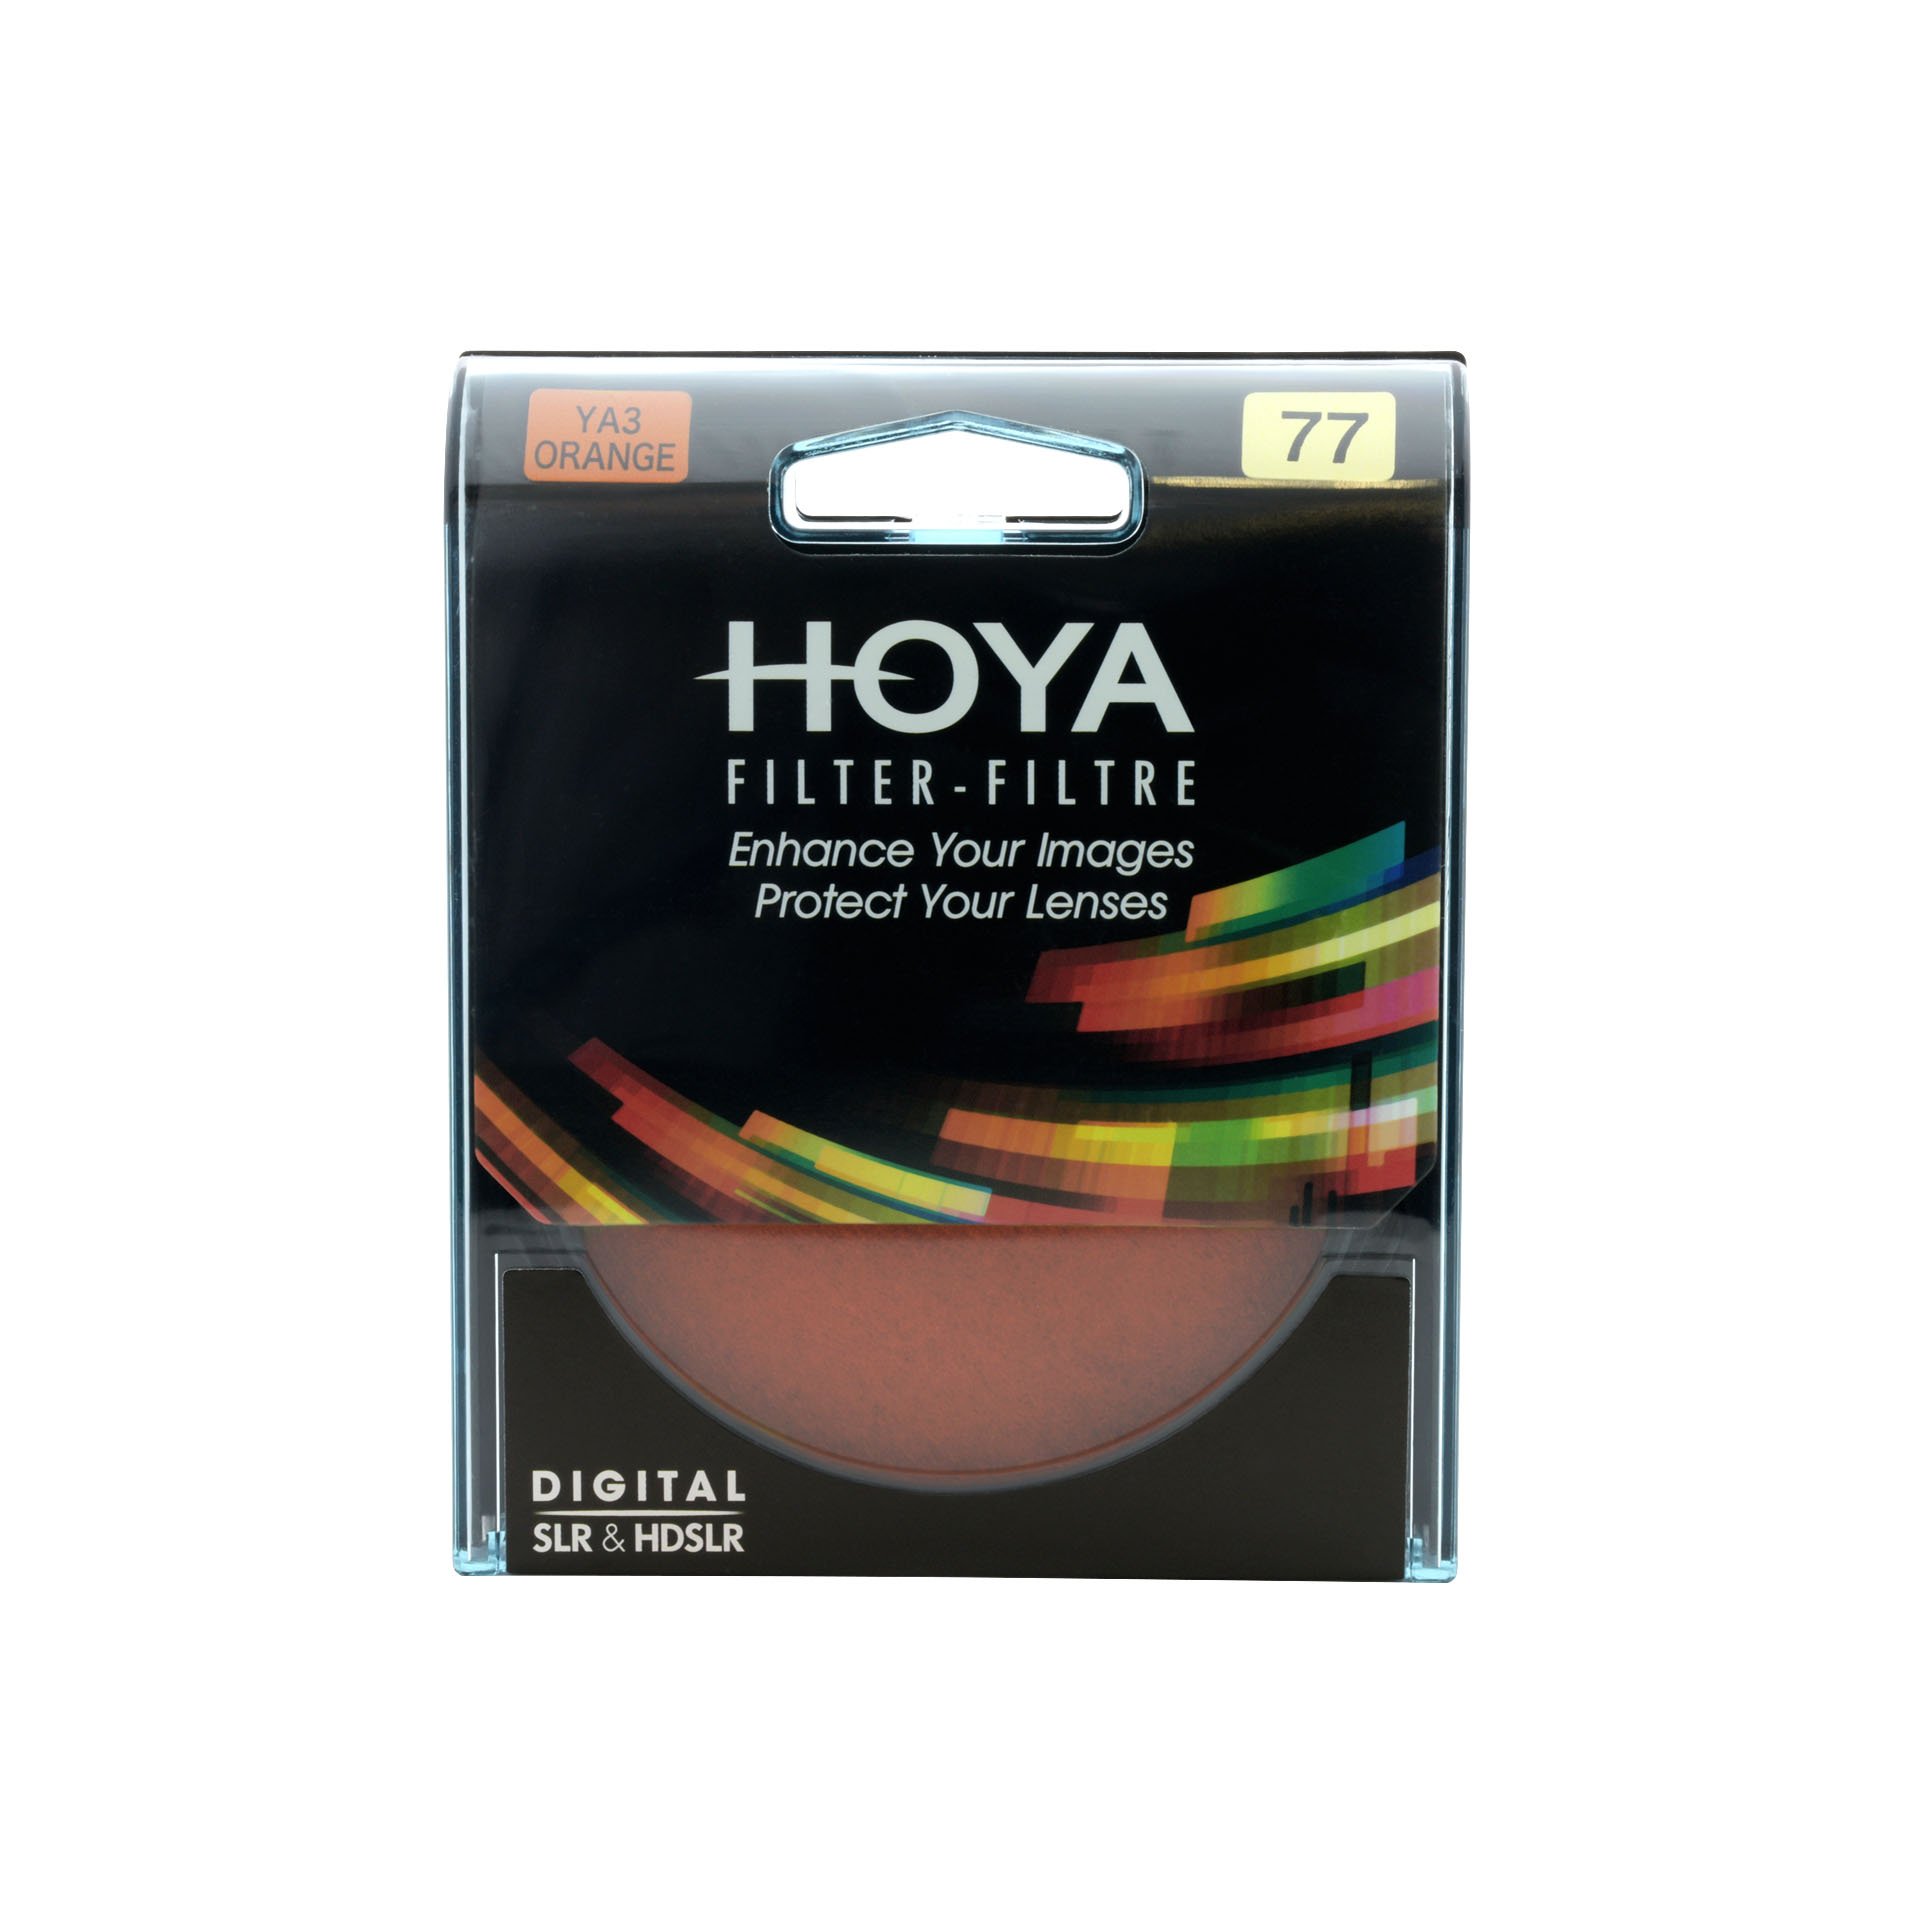 HOYA YA3 PRO (ORANGE) - quickmarketing